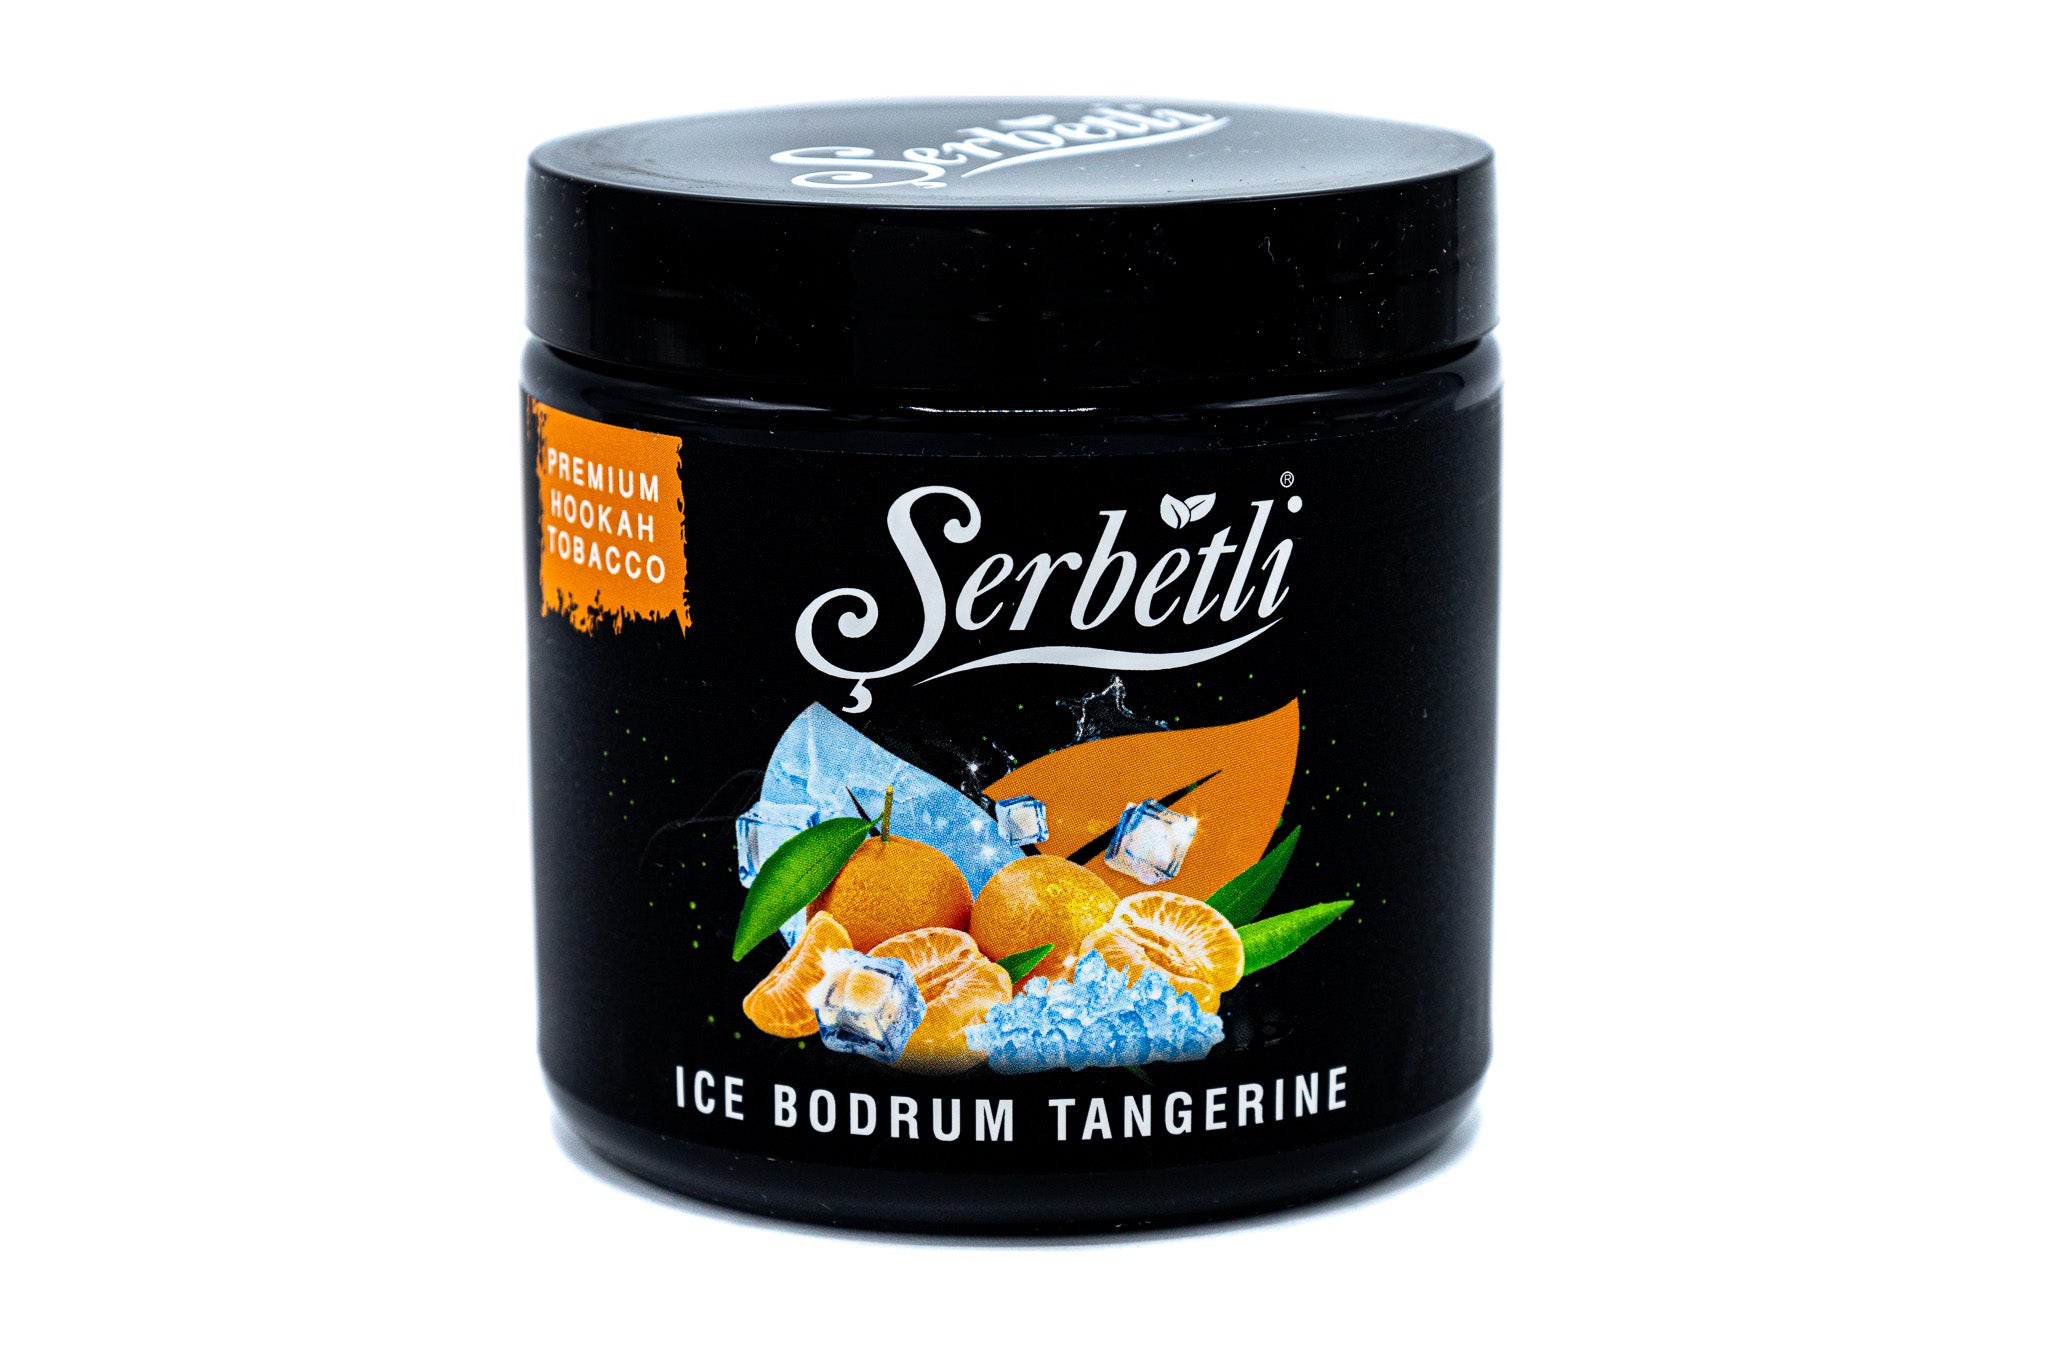 Serbetli Ice Bodrum Tangerine 250G - Smoxygen